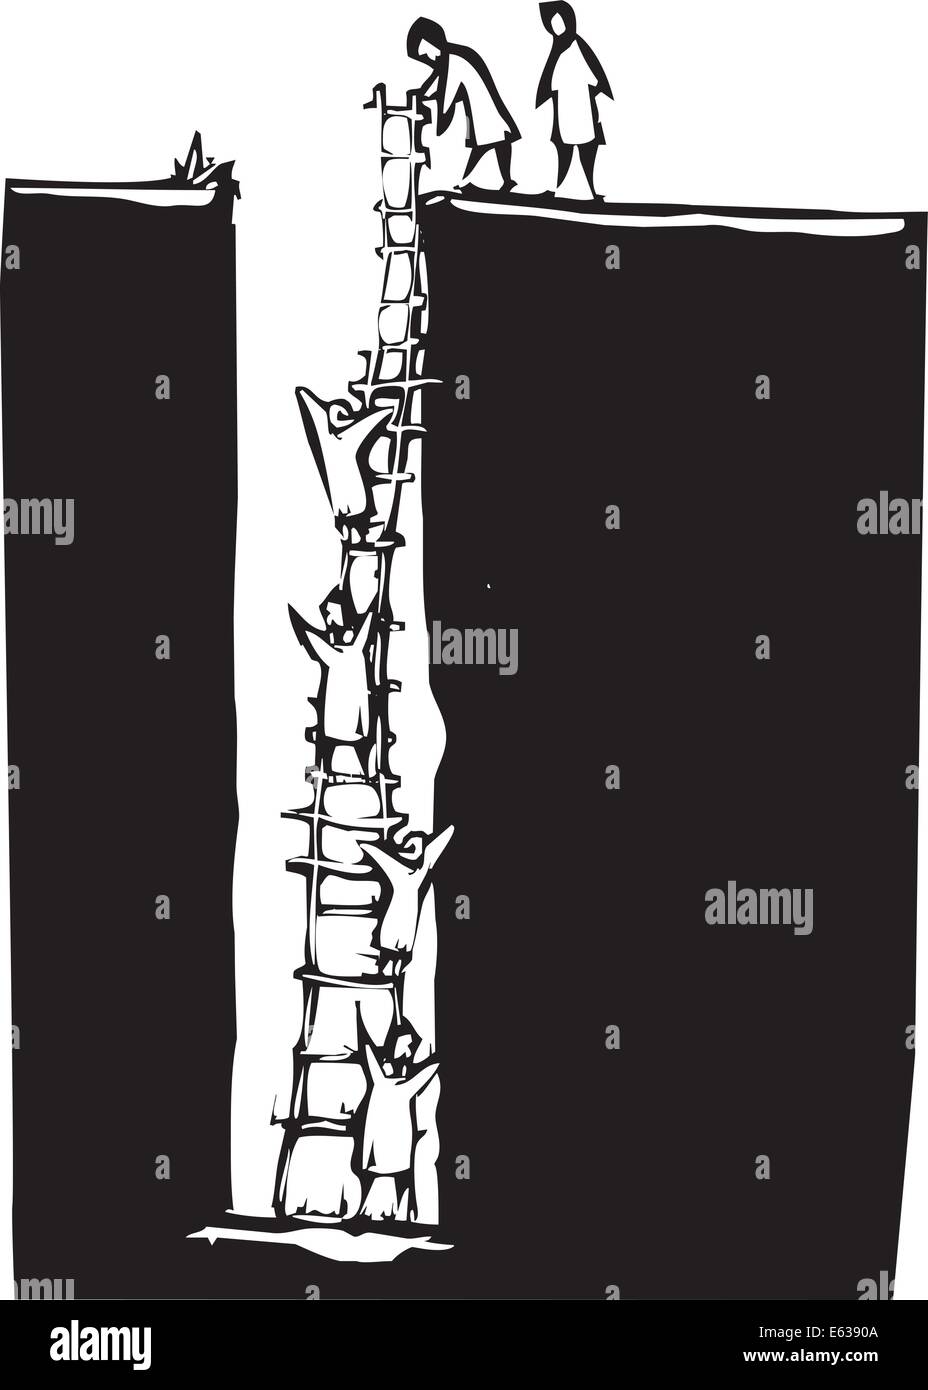 Holzschnitt-Stil Bild von Menschen, die aus einem tiefen Loch über eine Leiter klettern. Stock Vektor